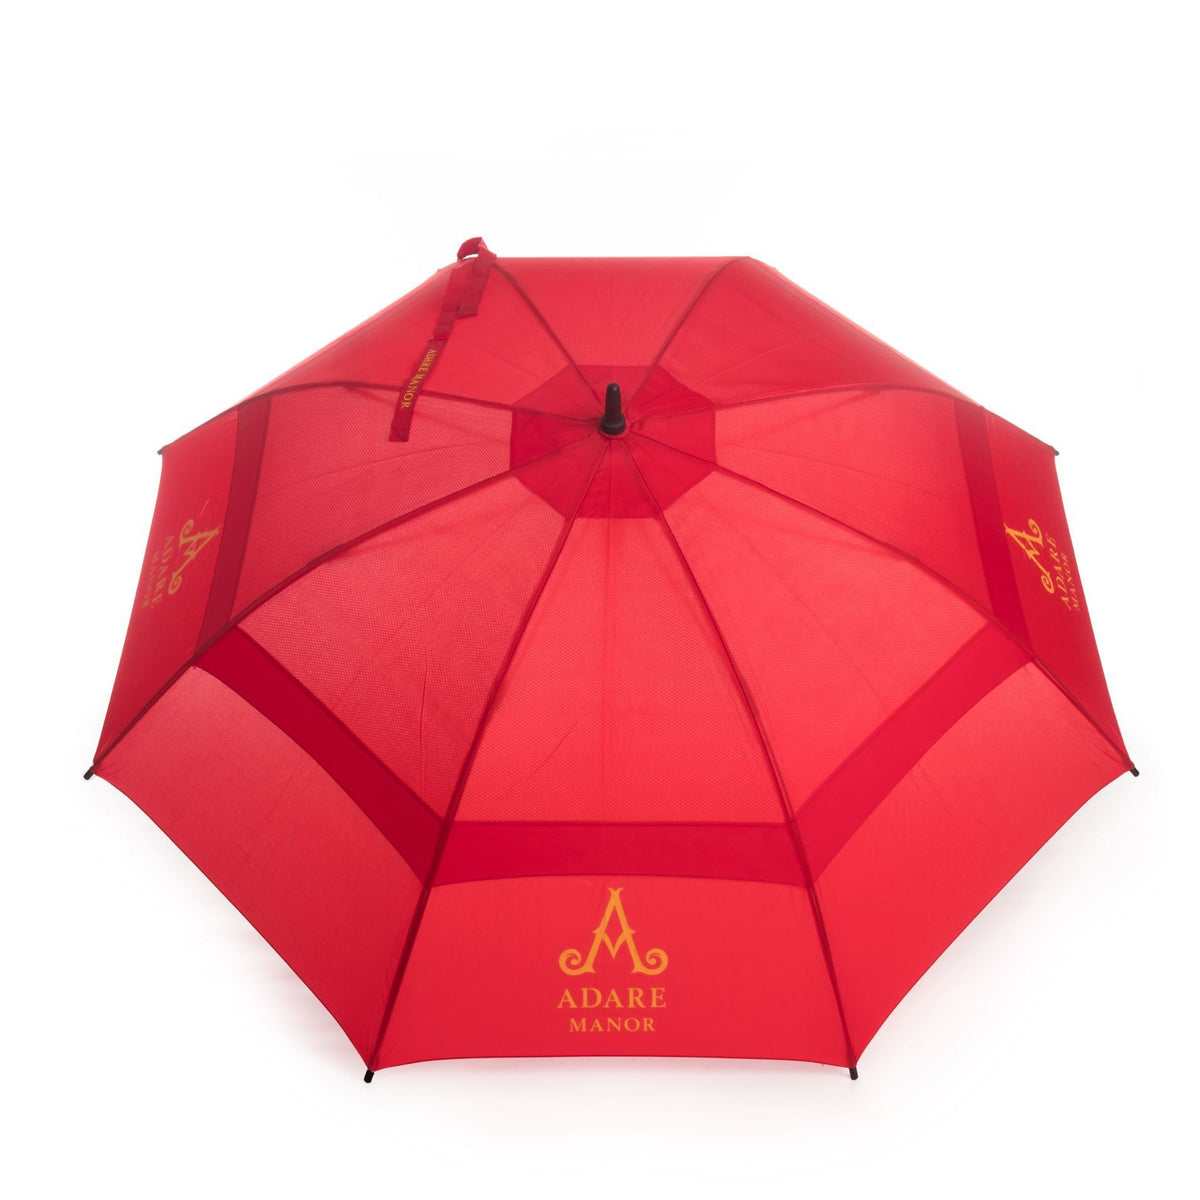 Adare Manor Magic Print Golf Umbrella